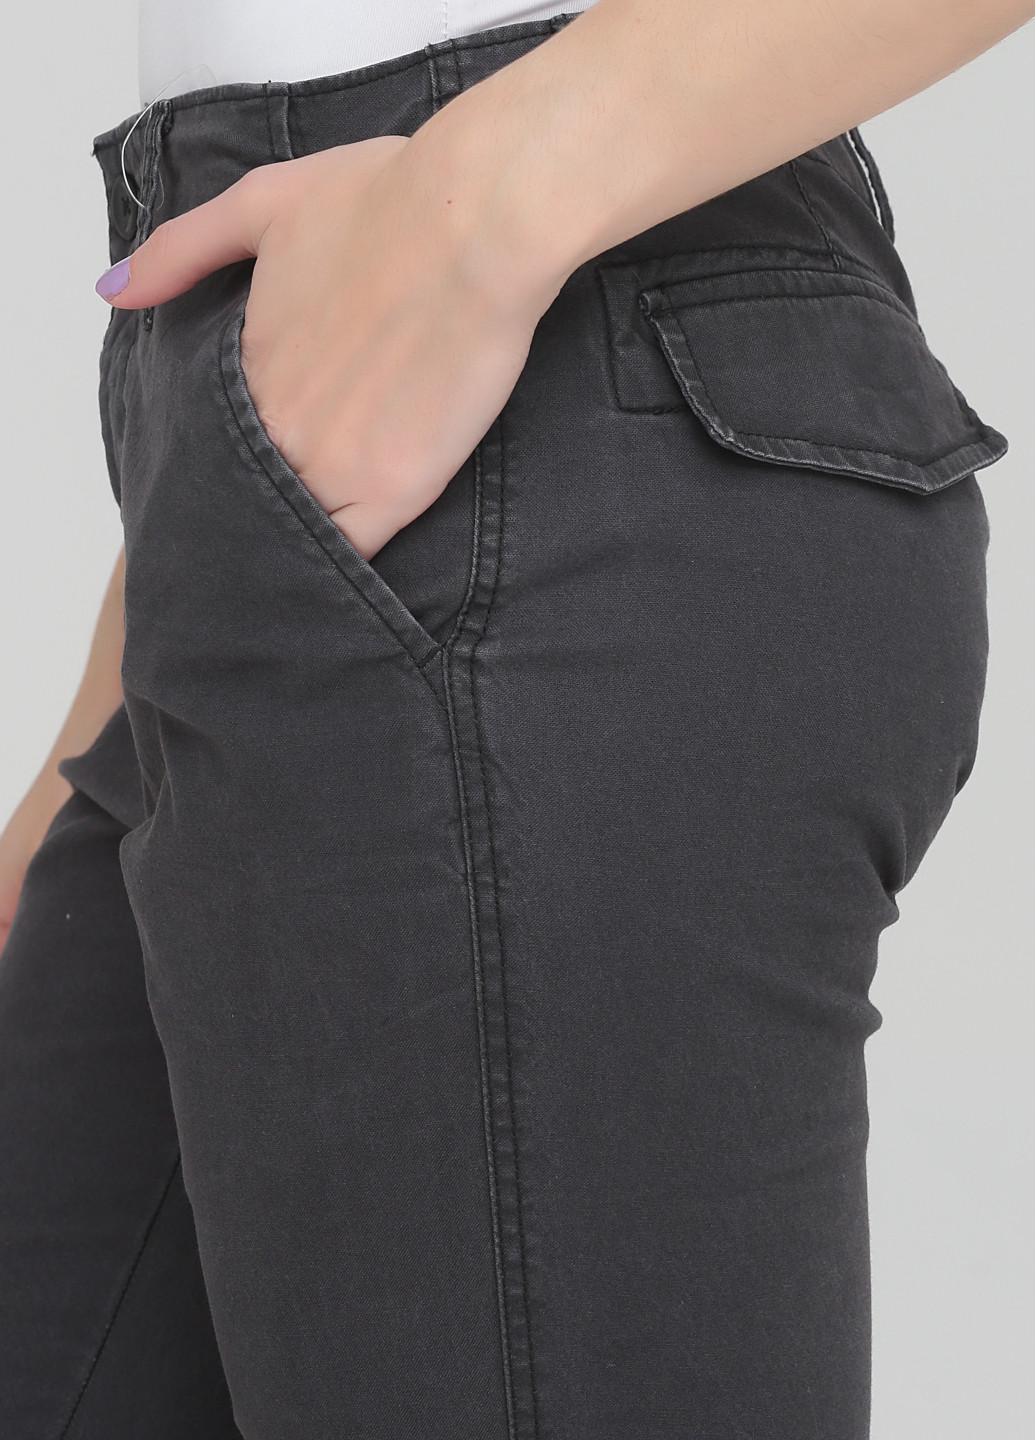 Темно-серые джинсовые демисезонные укороченные брюки Old Navy